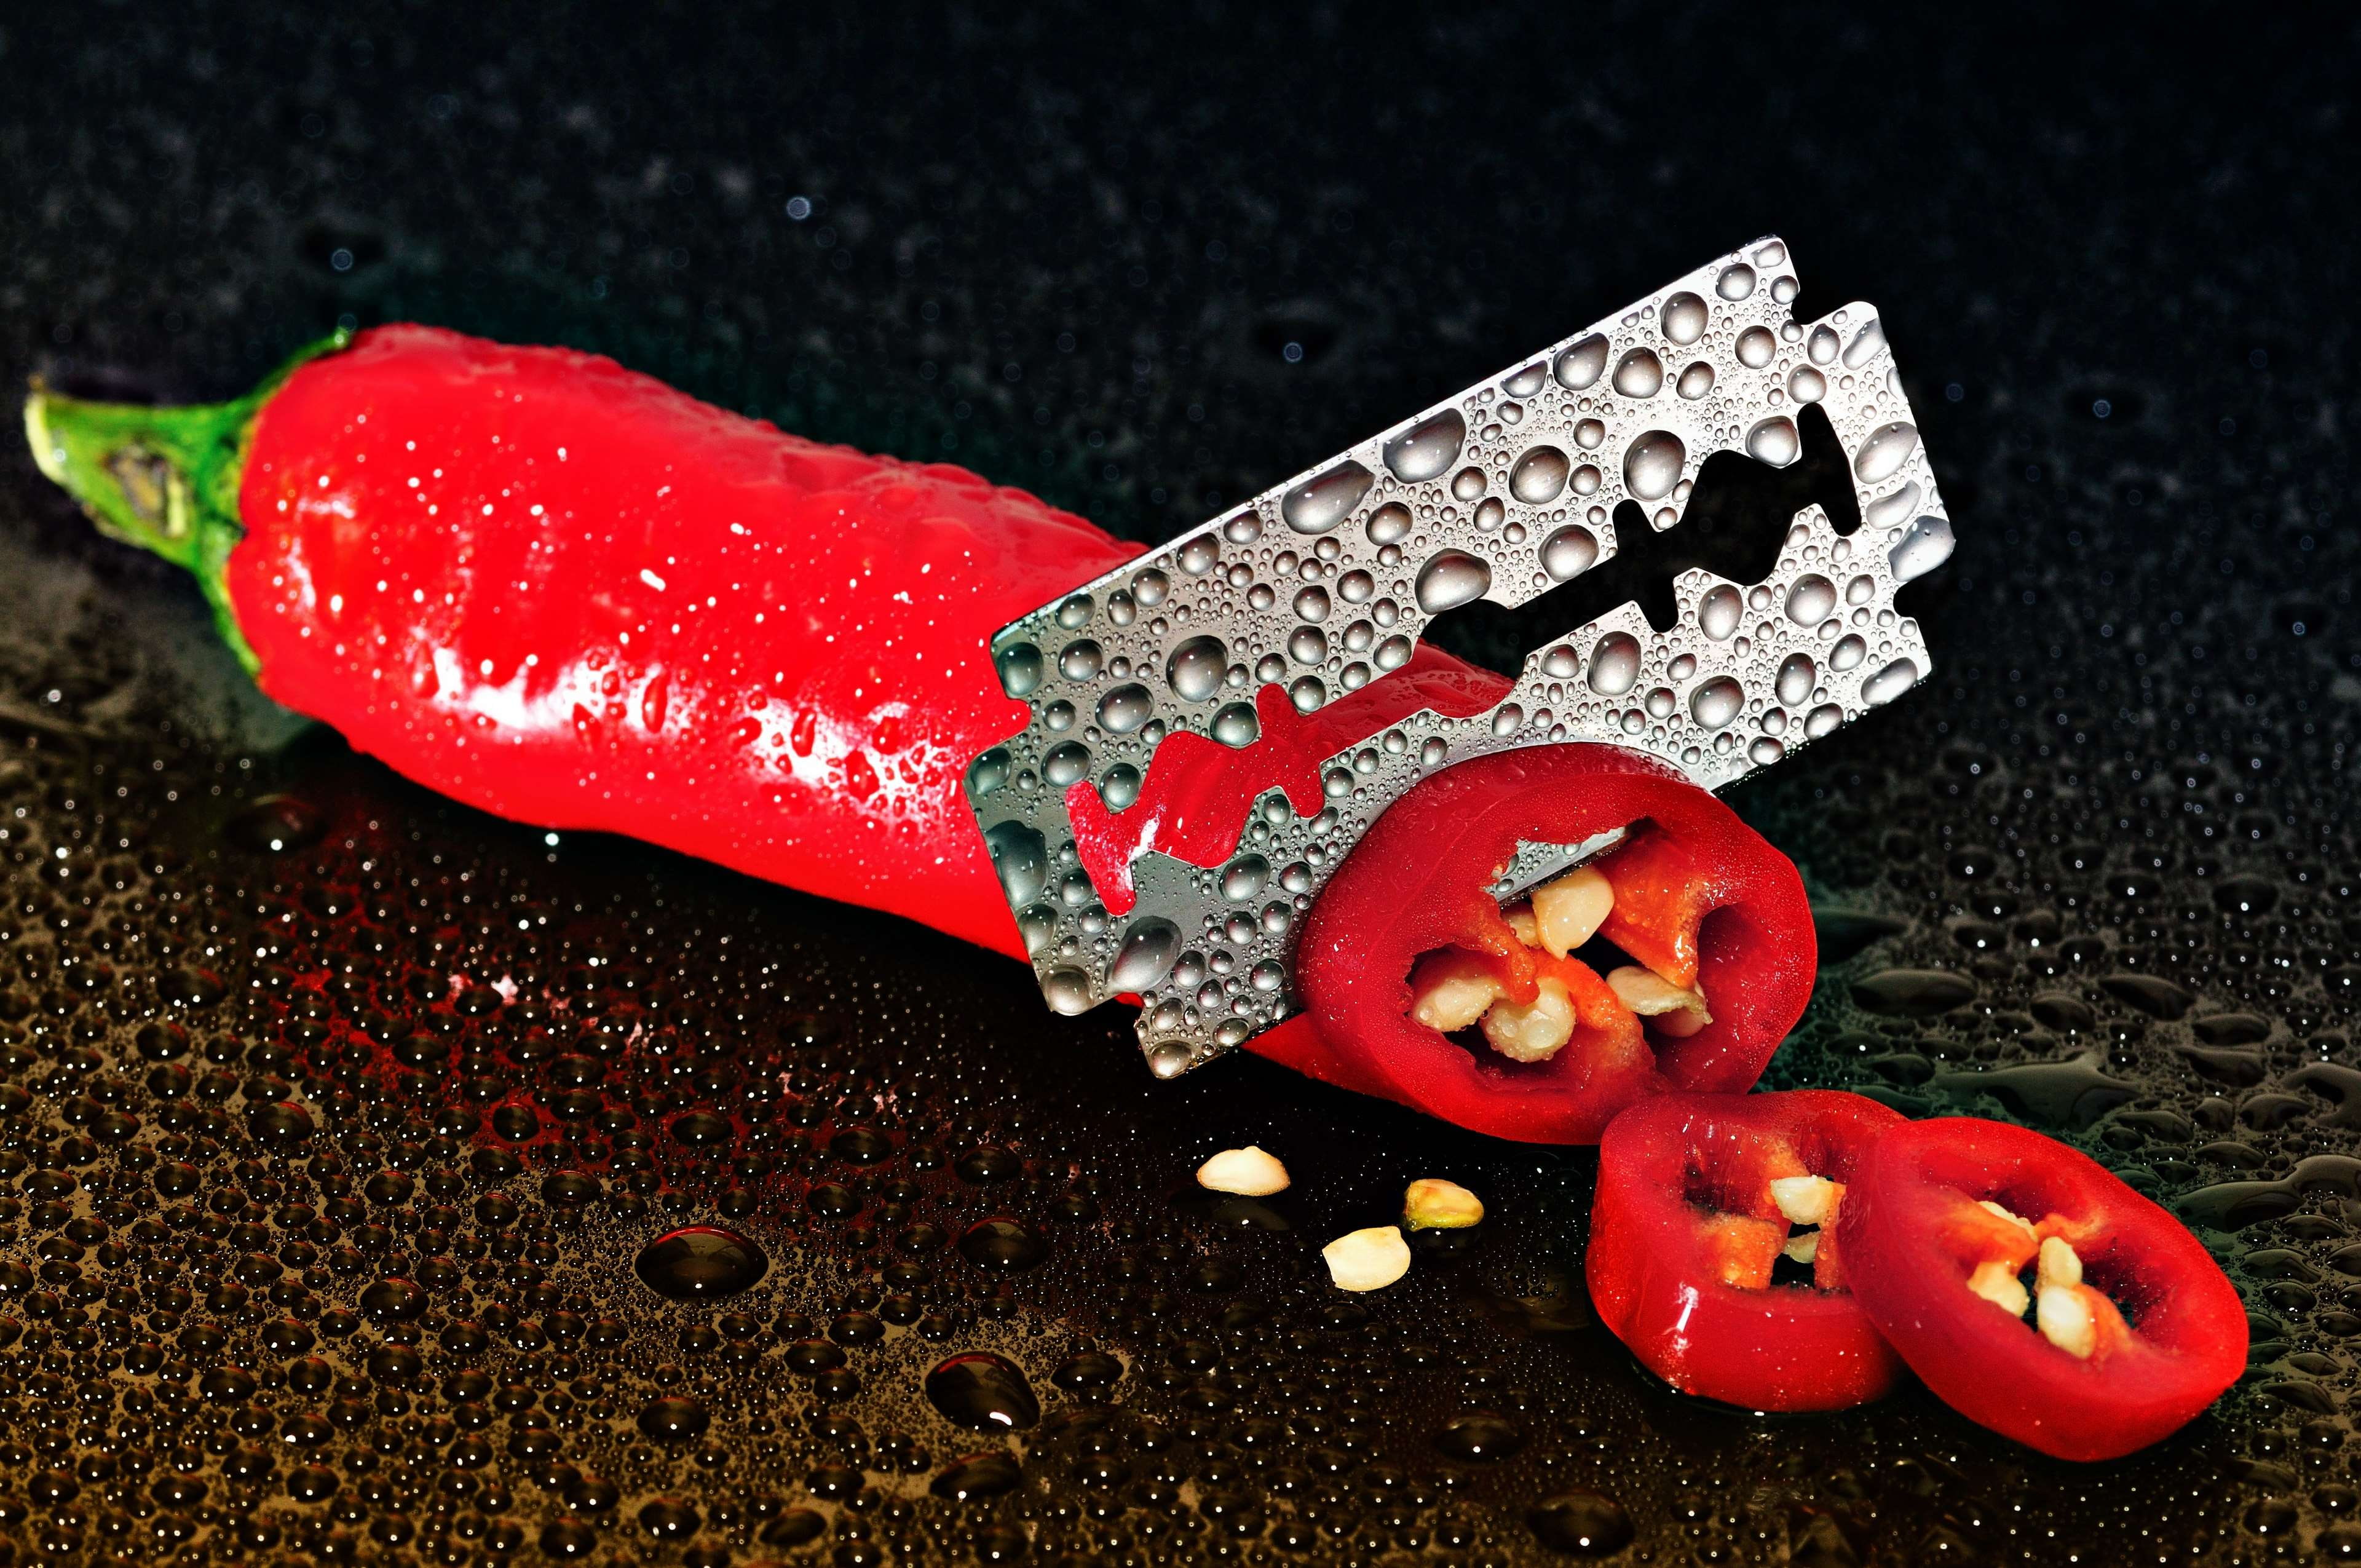 blade, chili pepper, moist, moisture, razor blade, red, seeds